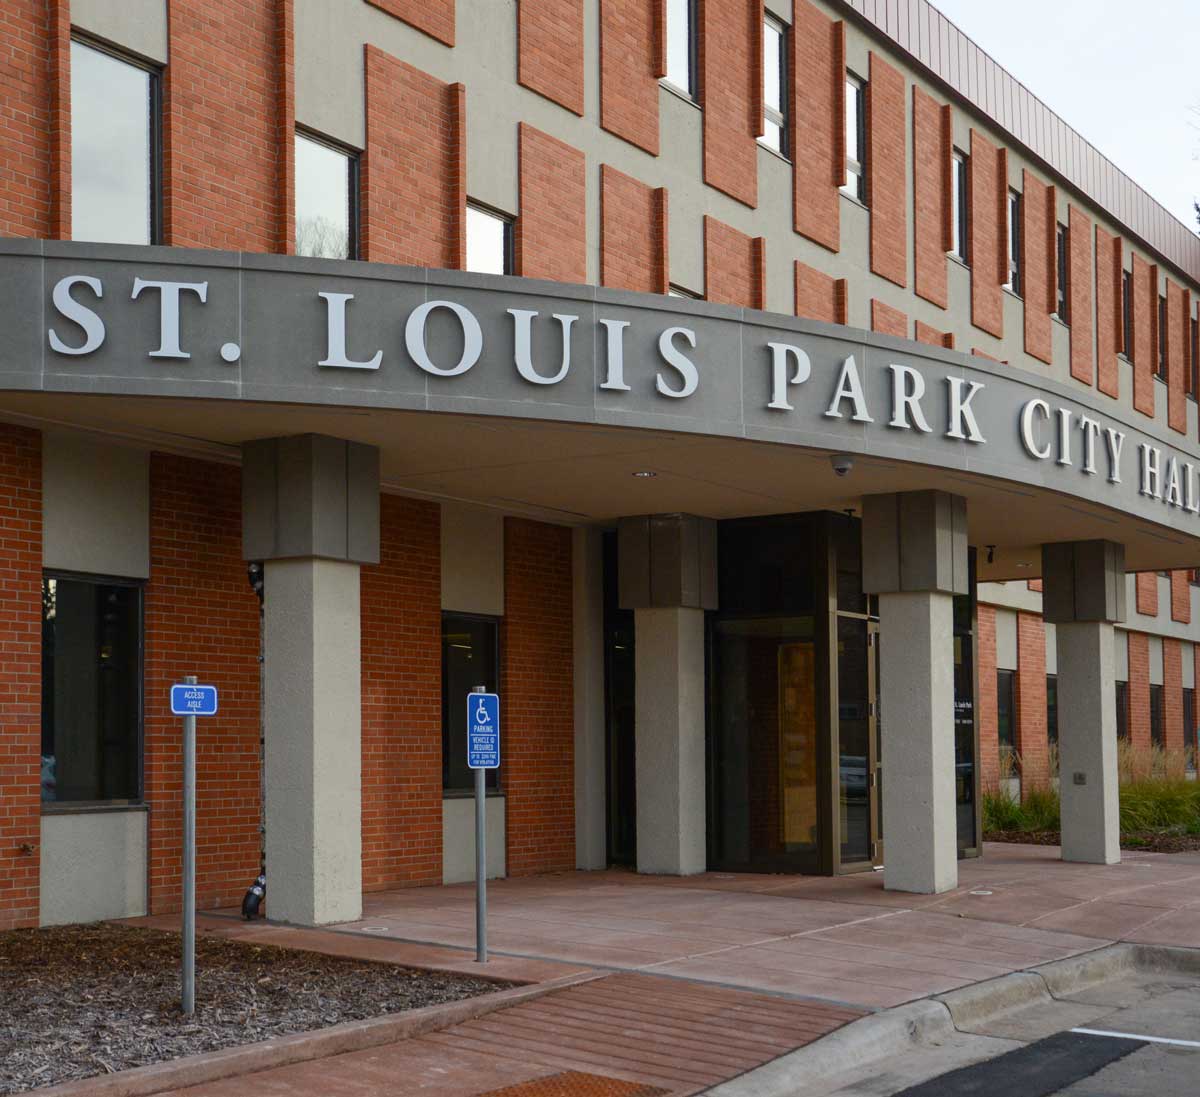 Saint Louis Park City Hall